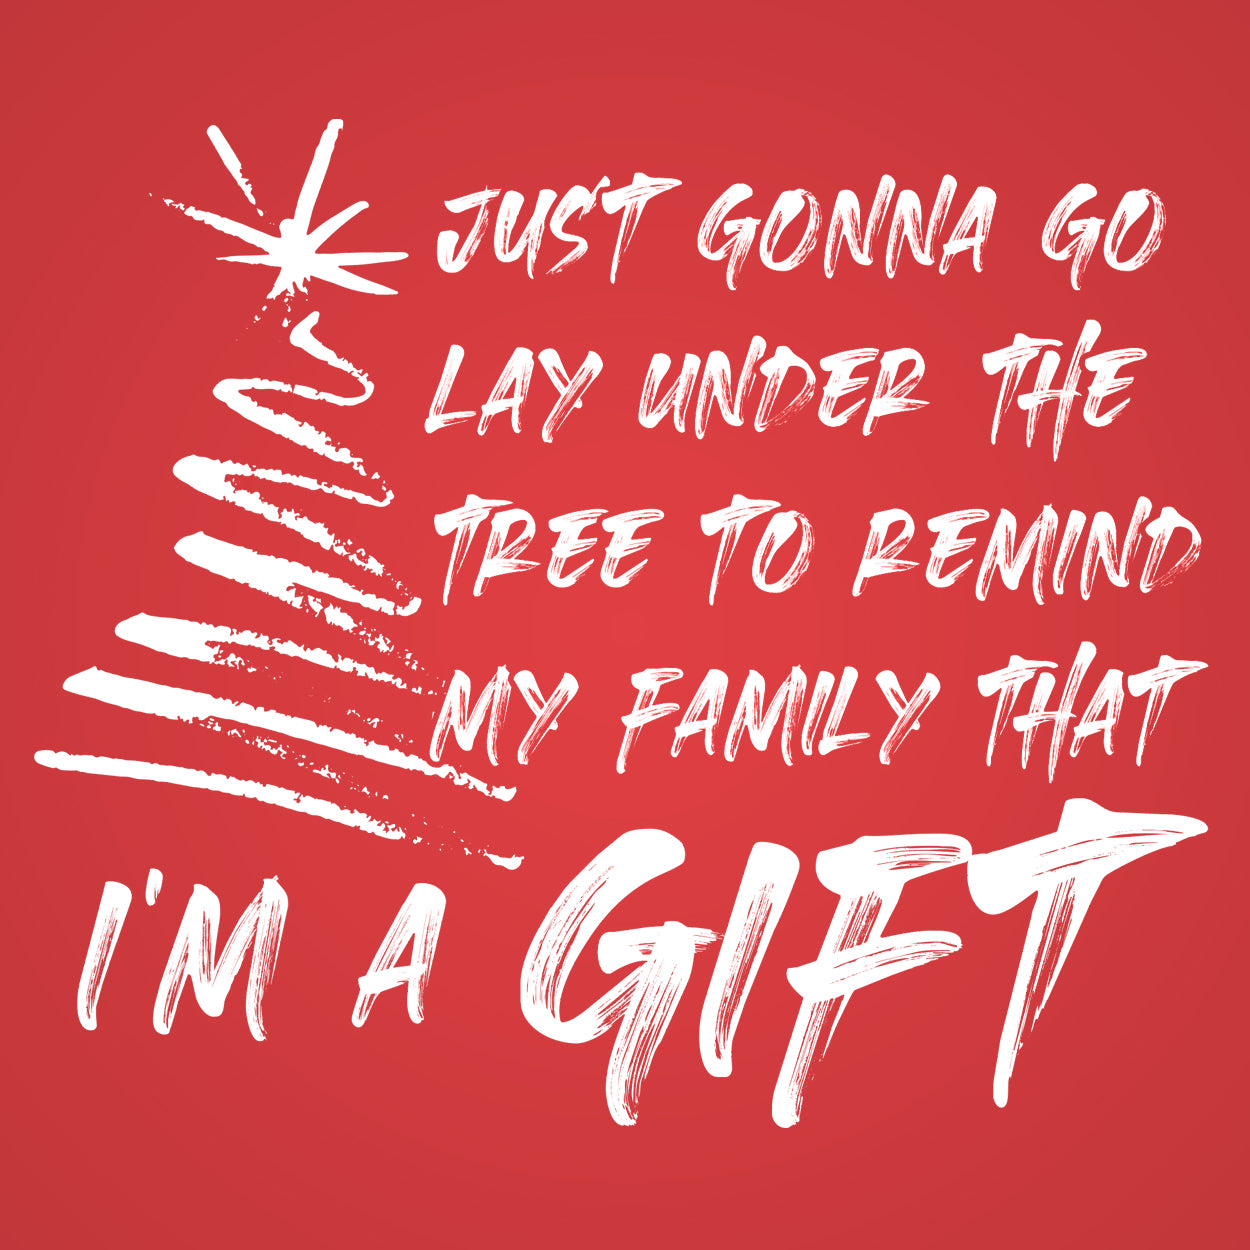 I'm A (Christmas) Gift Tshirt - Donkey Tees